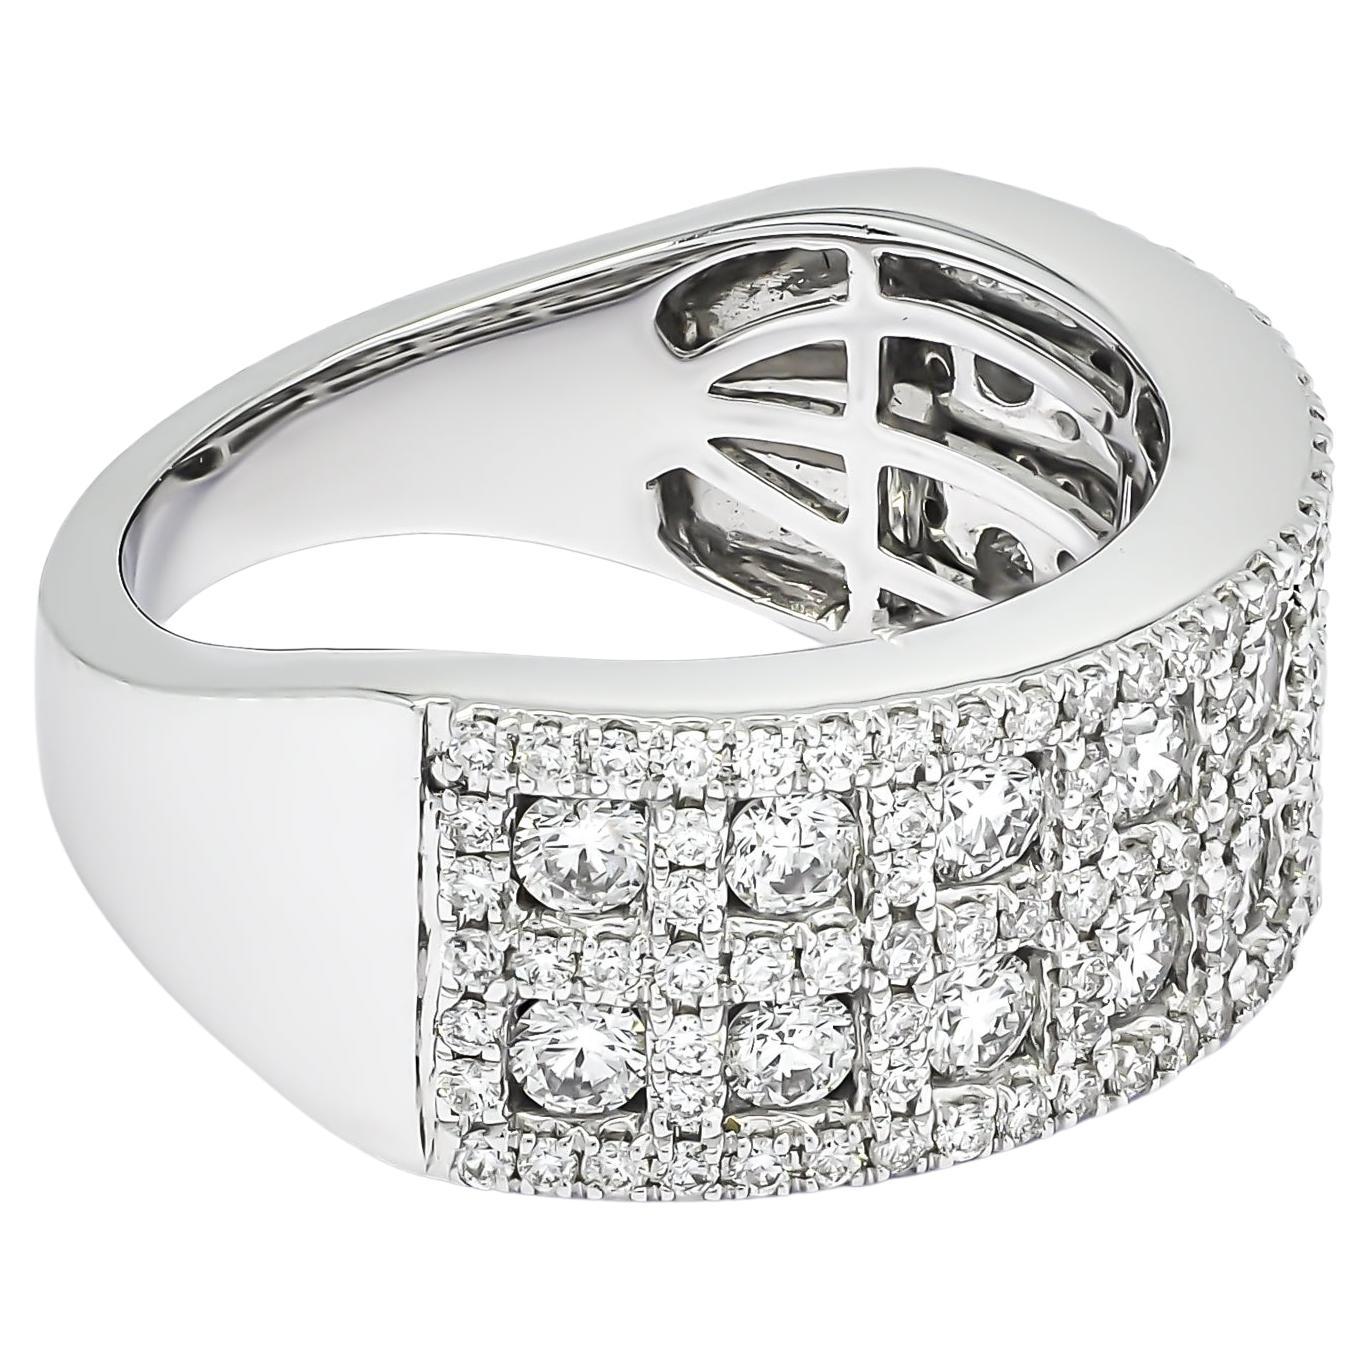 Dieser Ring ist in luxuriösem 18KT Weißgold mit kühnen mehrreihigen quadratischen Fassung mit runden Shape natürlichen Diamanten gesetzt. Ihr Herz wird einen Schlag aussetzen, wenn sie dieses handgefertigte, gravierte Diamantband sieht. 

Eine